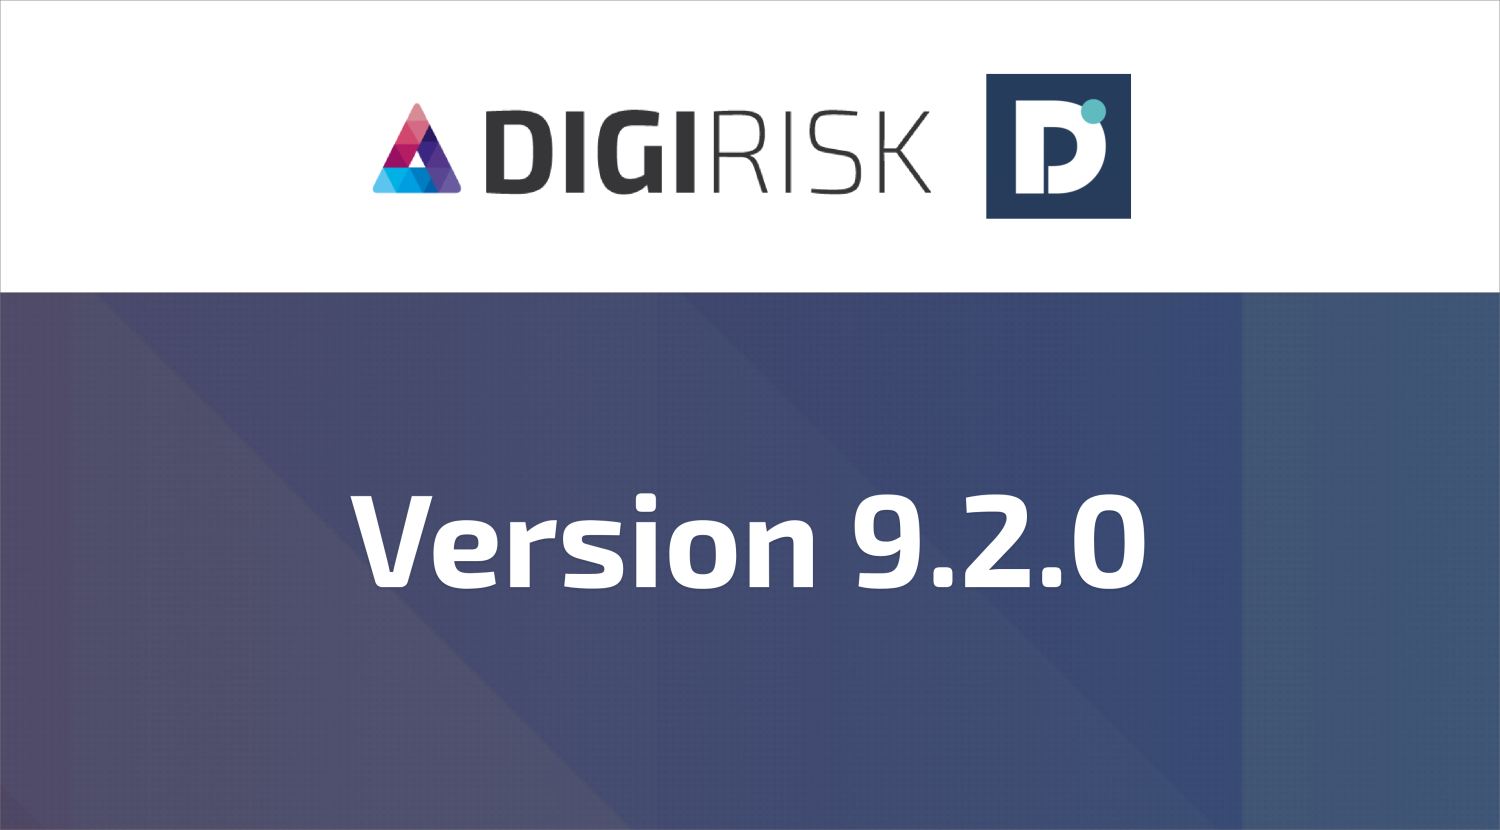 DigiRisk version 9.2.0